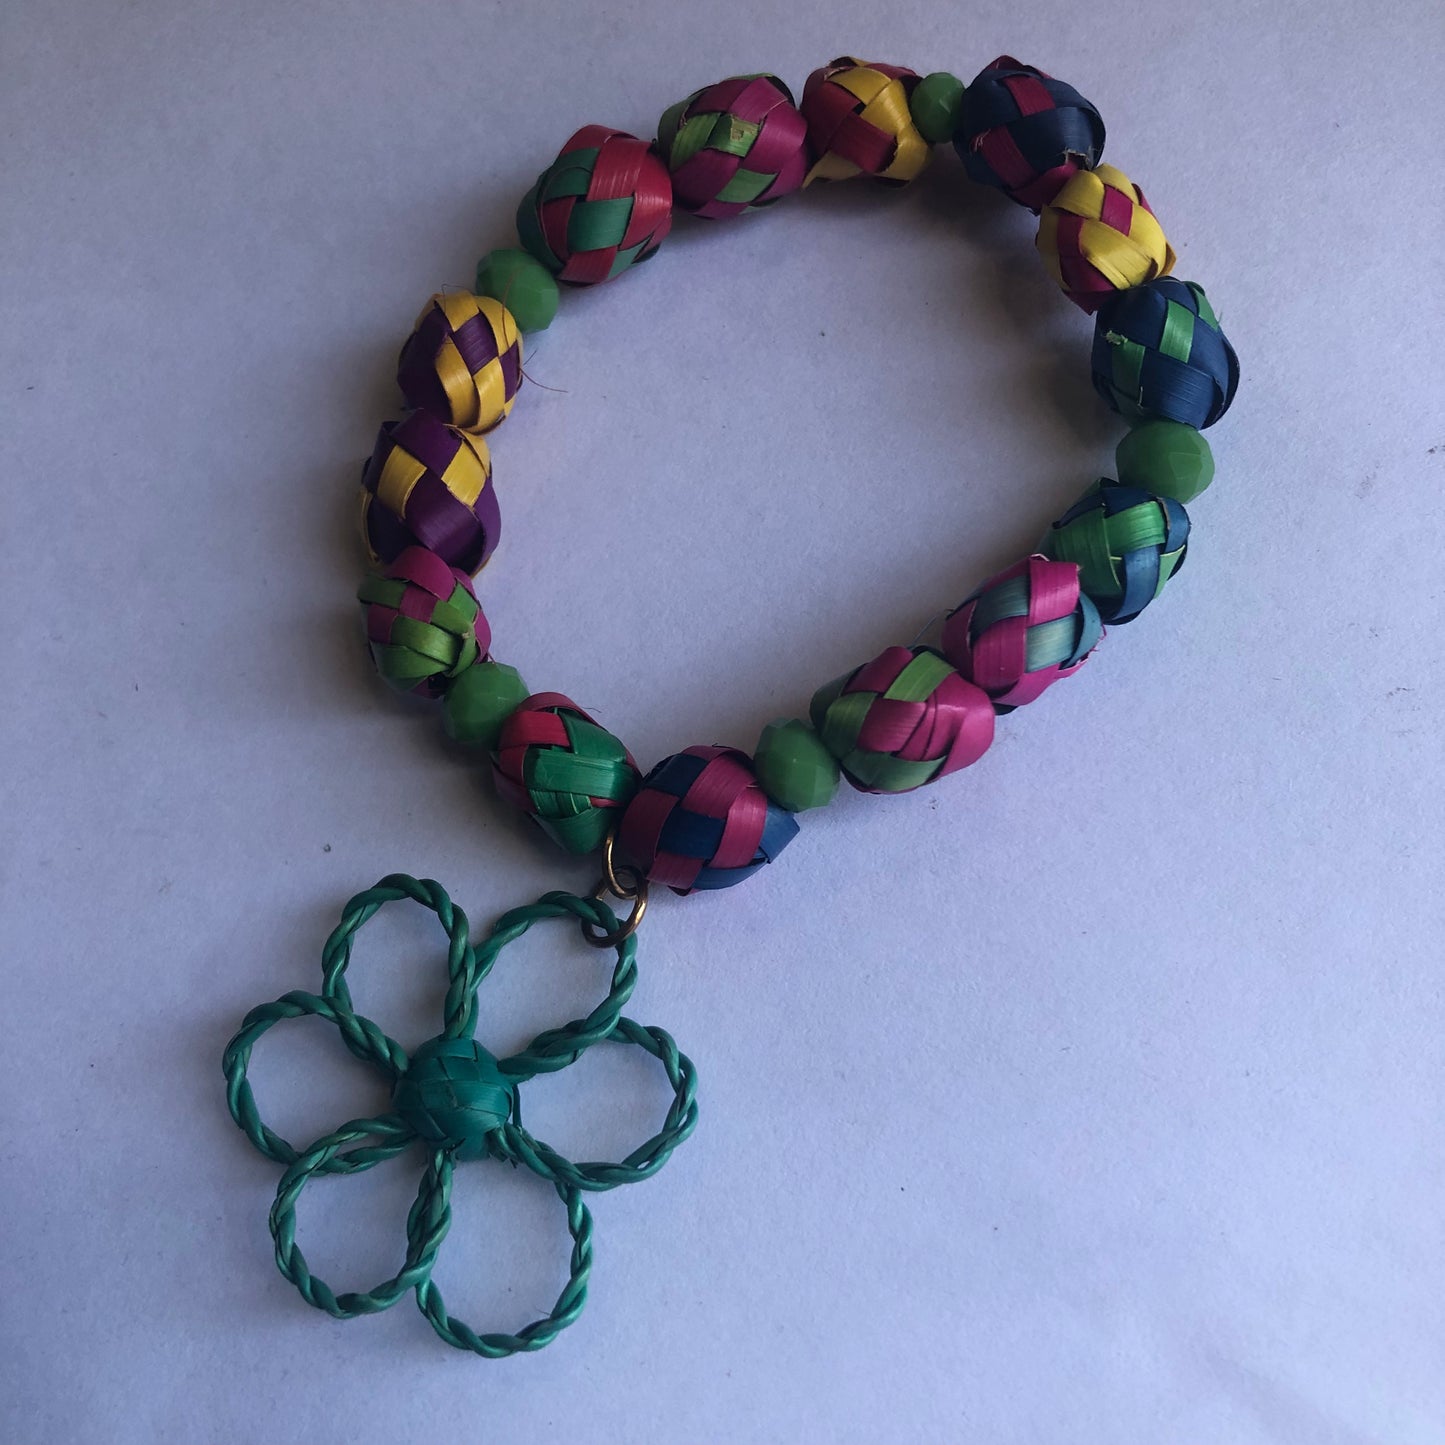 Palm leaf bracelet with flower charm